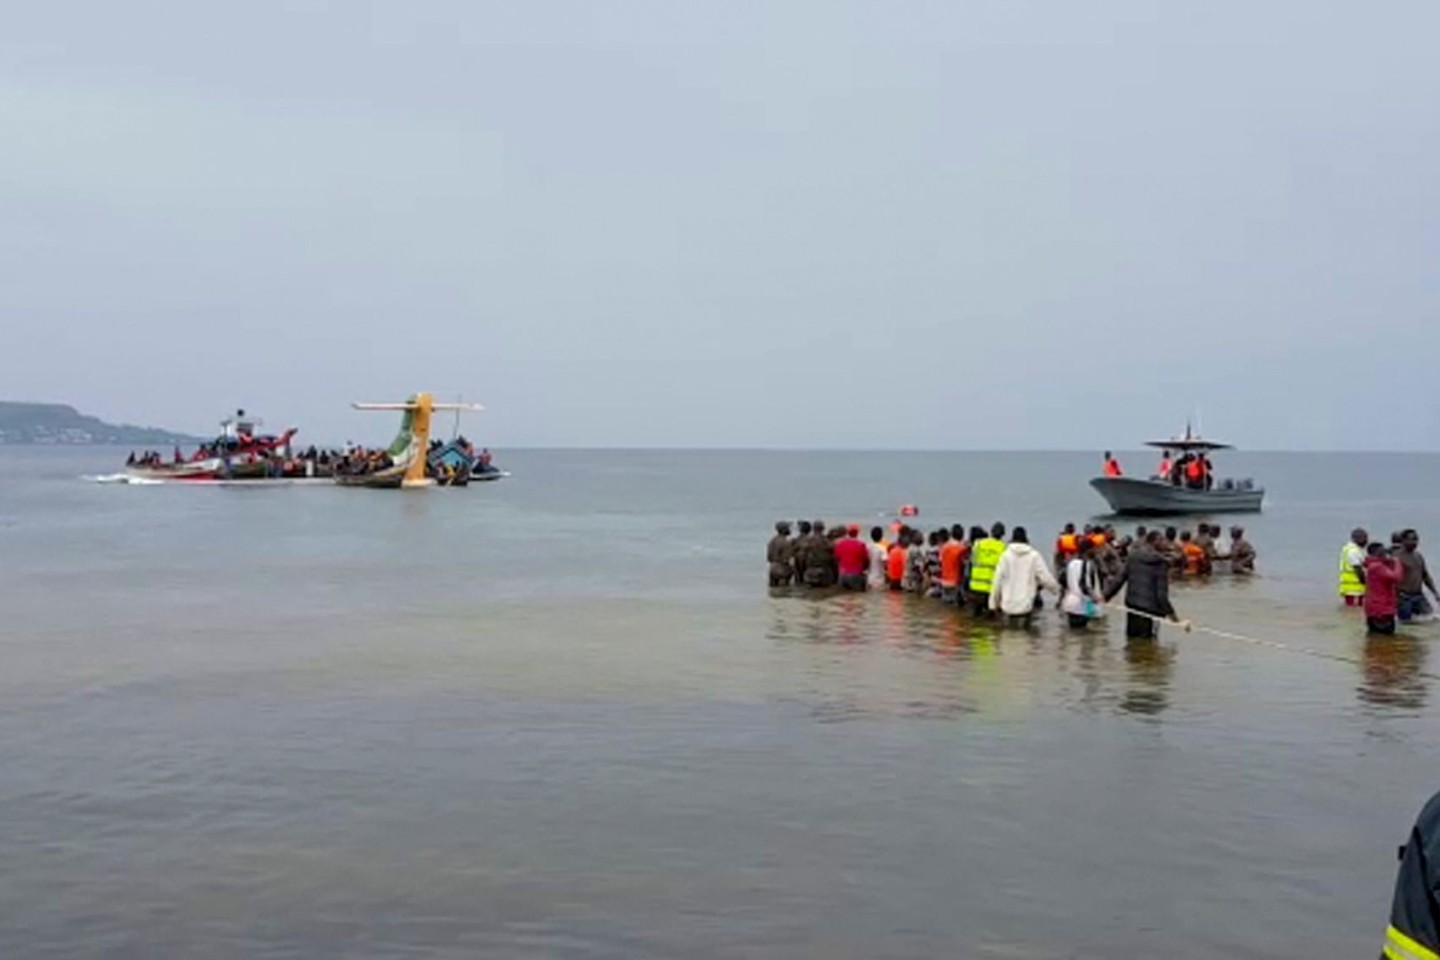 Rettungskräfte in Booten arbeiten nach dem Absturz eines Flugzeugs am Unglücksort.